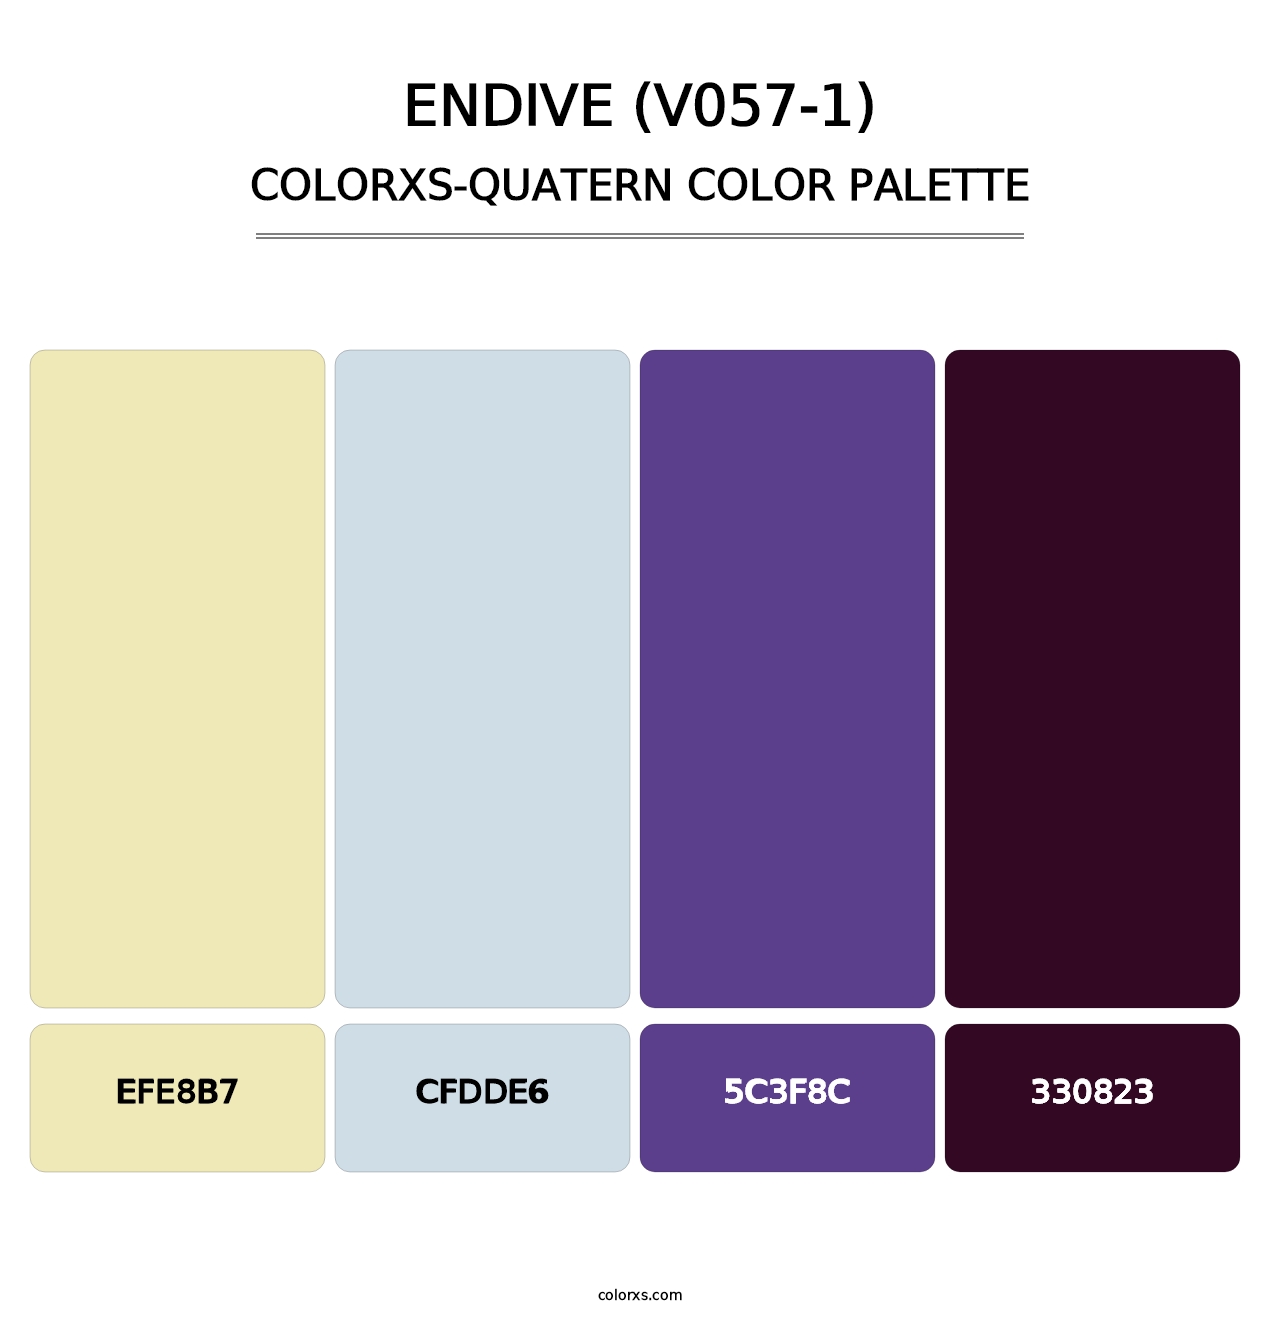 Endive (V057-1) - Colorxs Quatern Palette